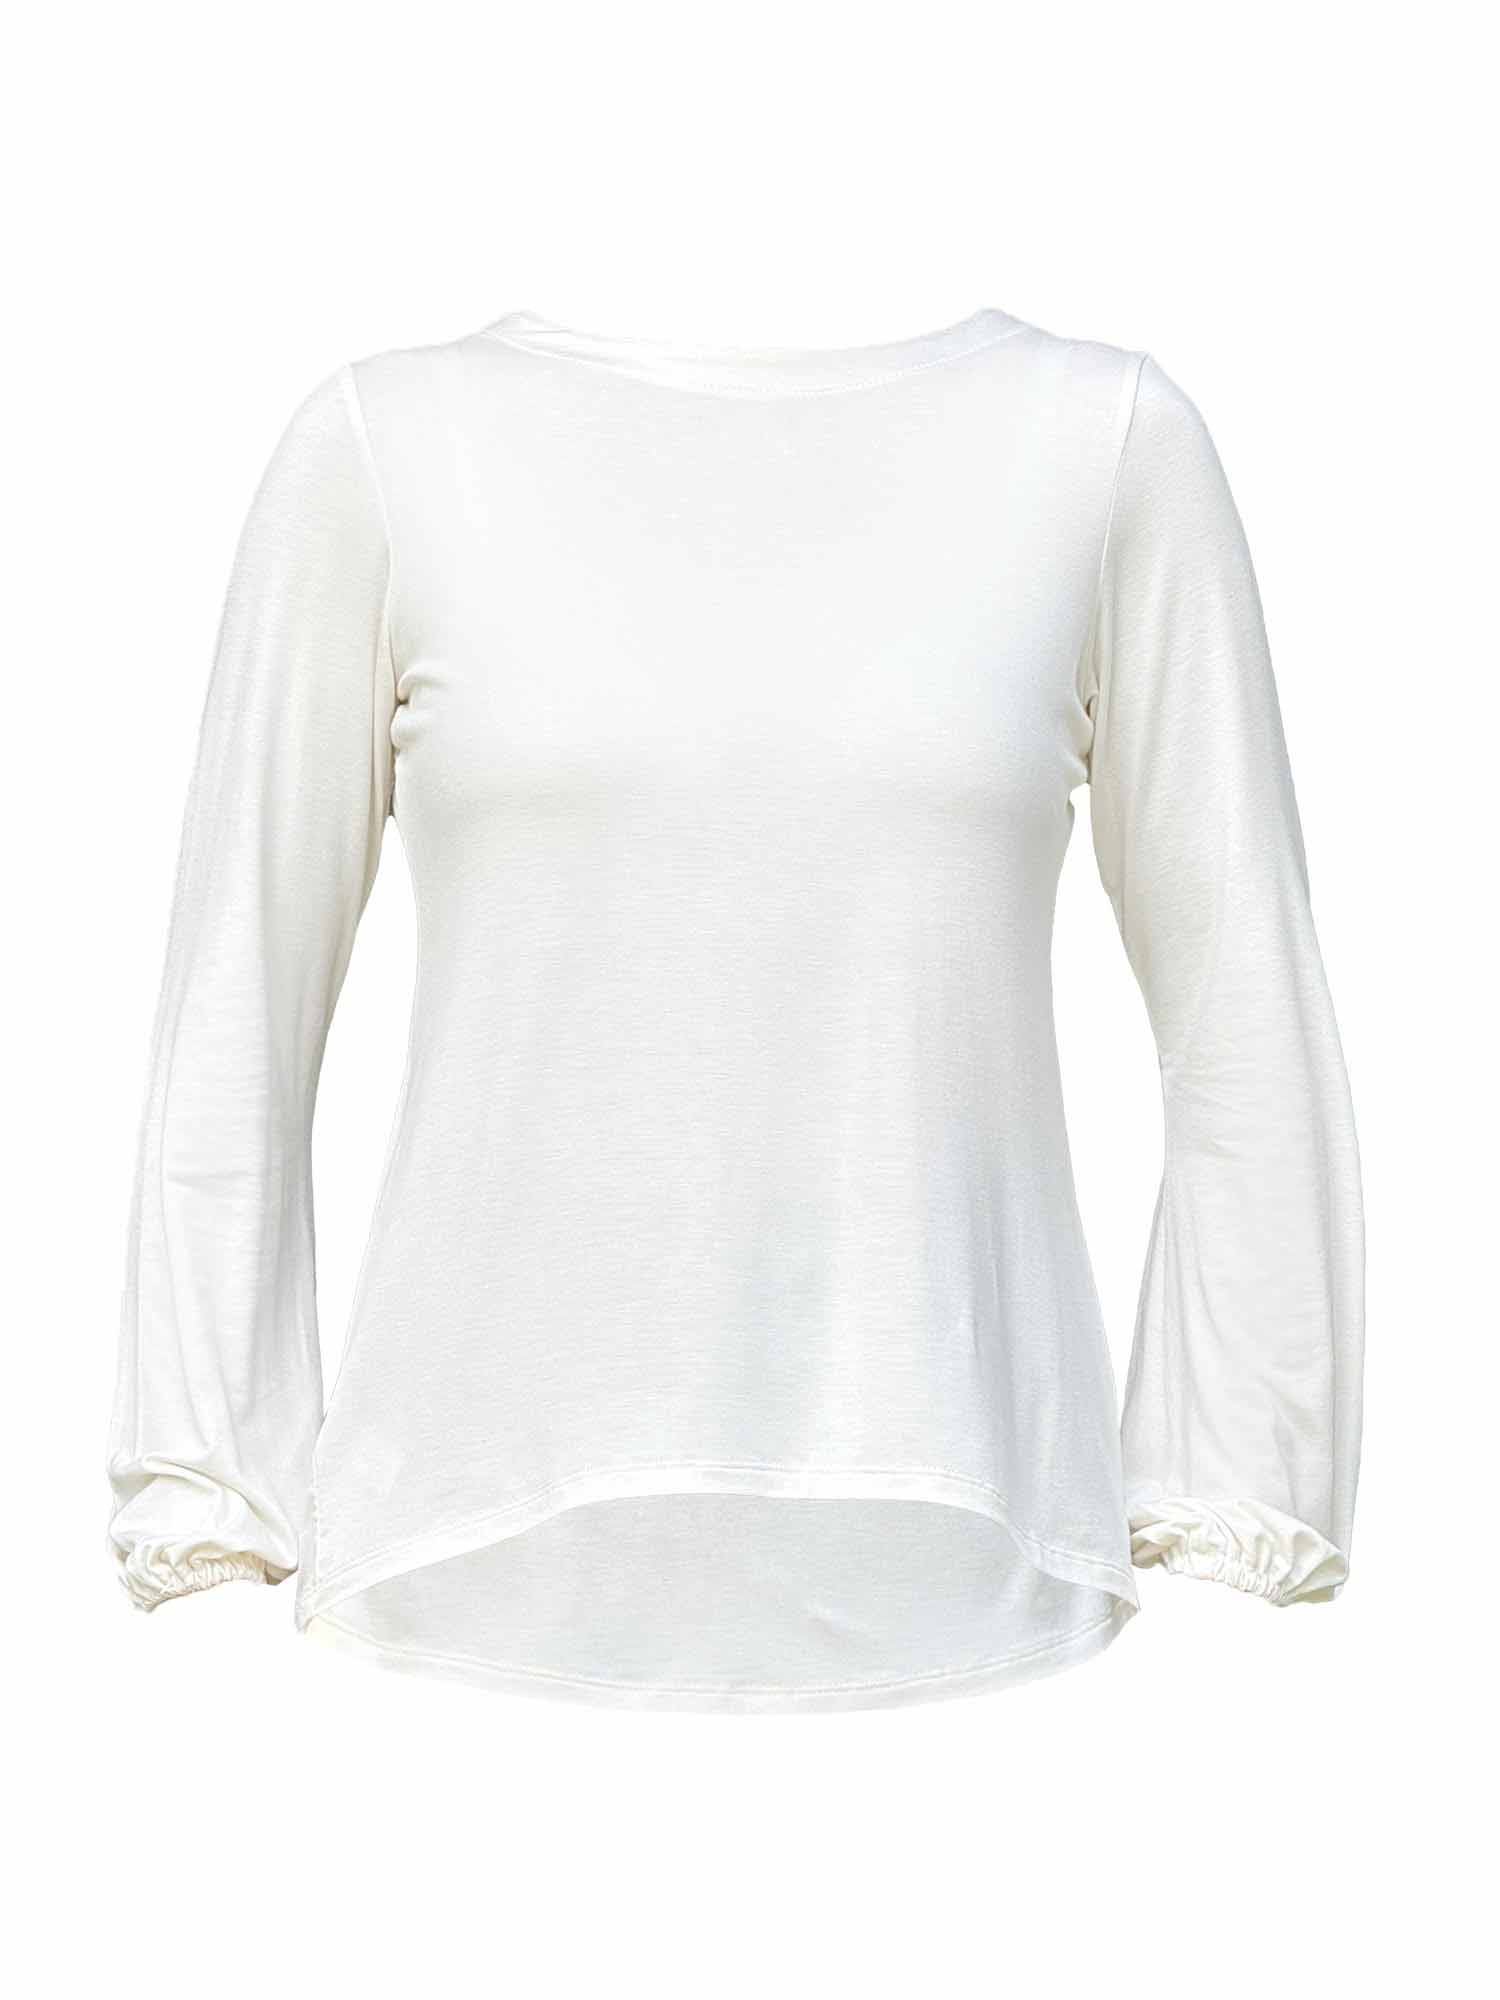 CONNEC Women's Fishing Long Sleeve T-Shirt Multi (Size: XL)